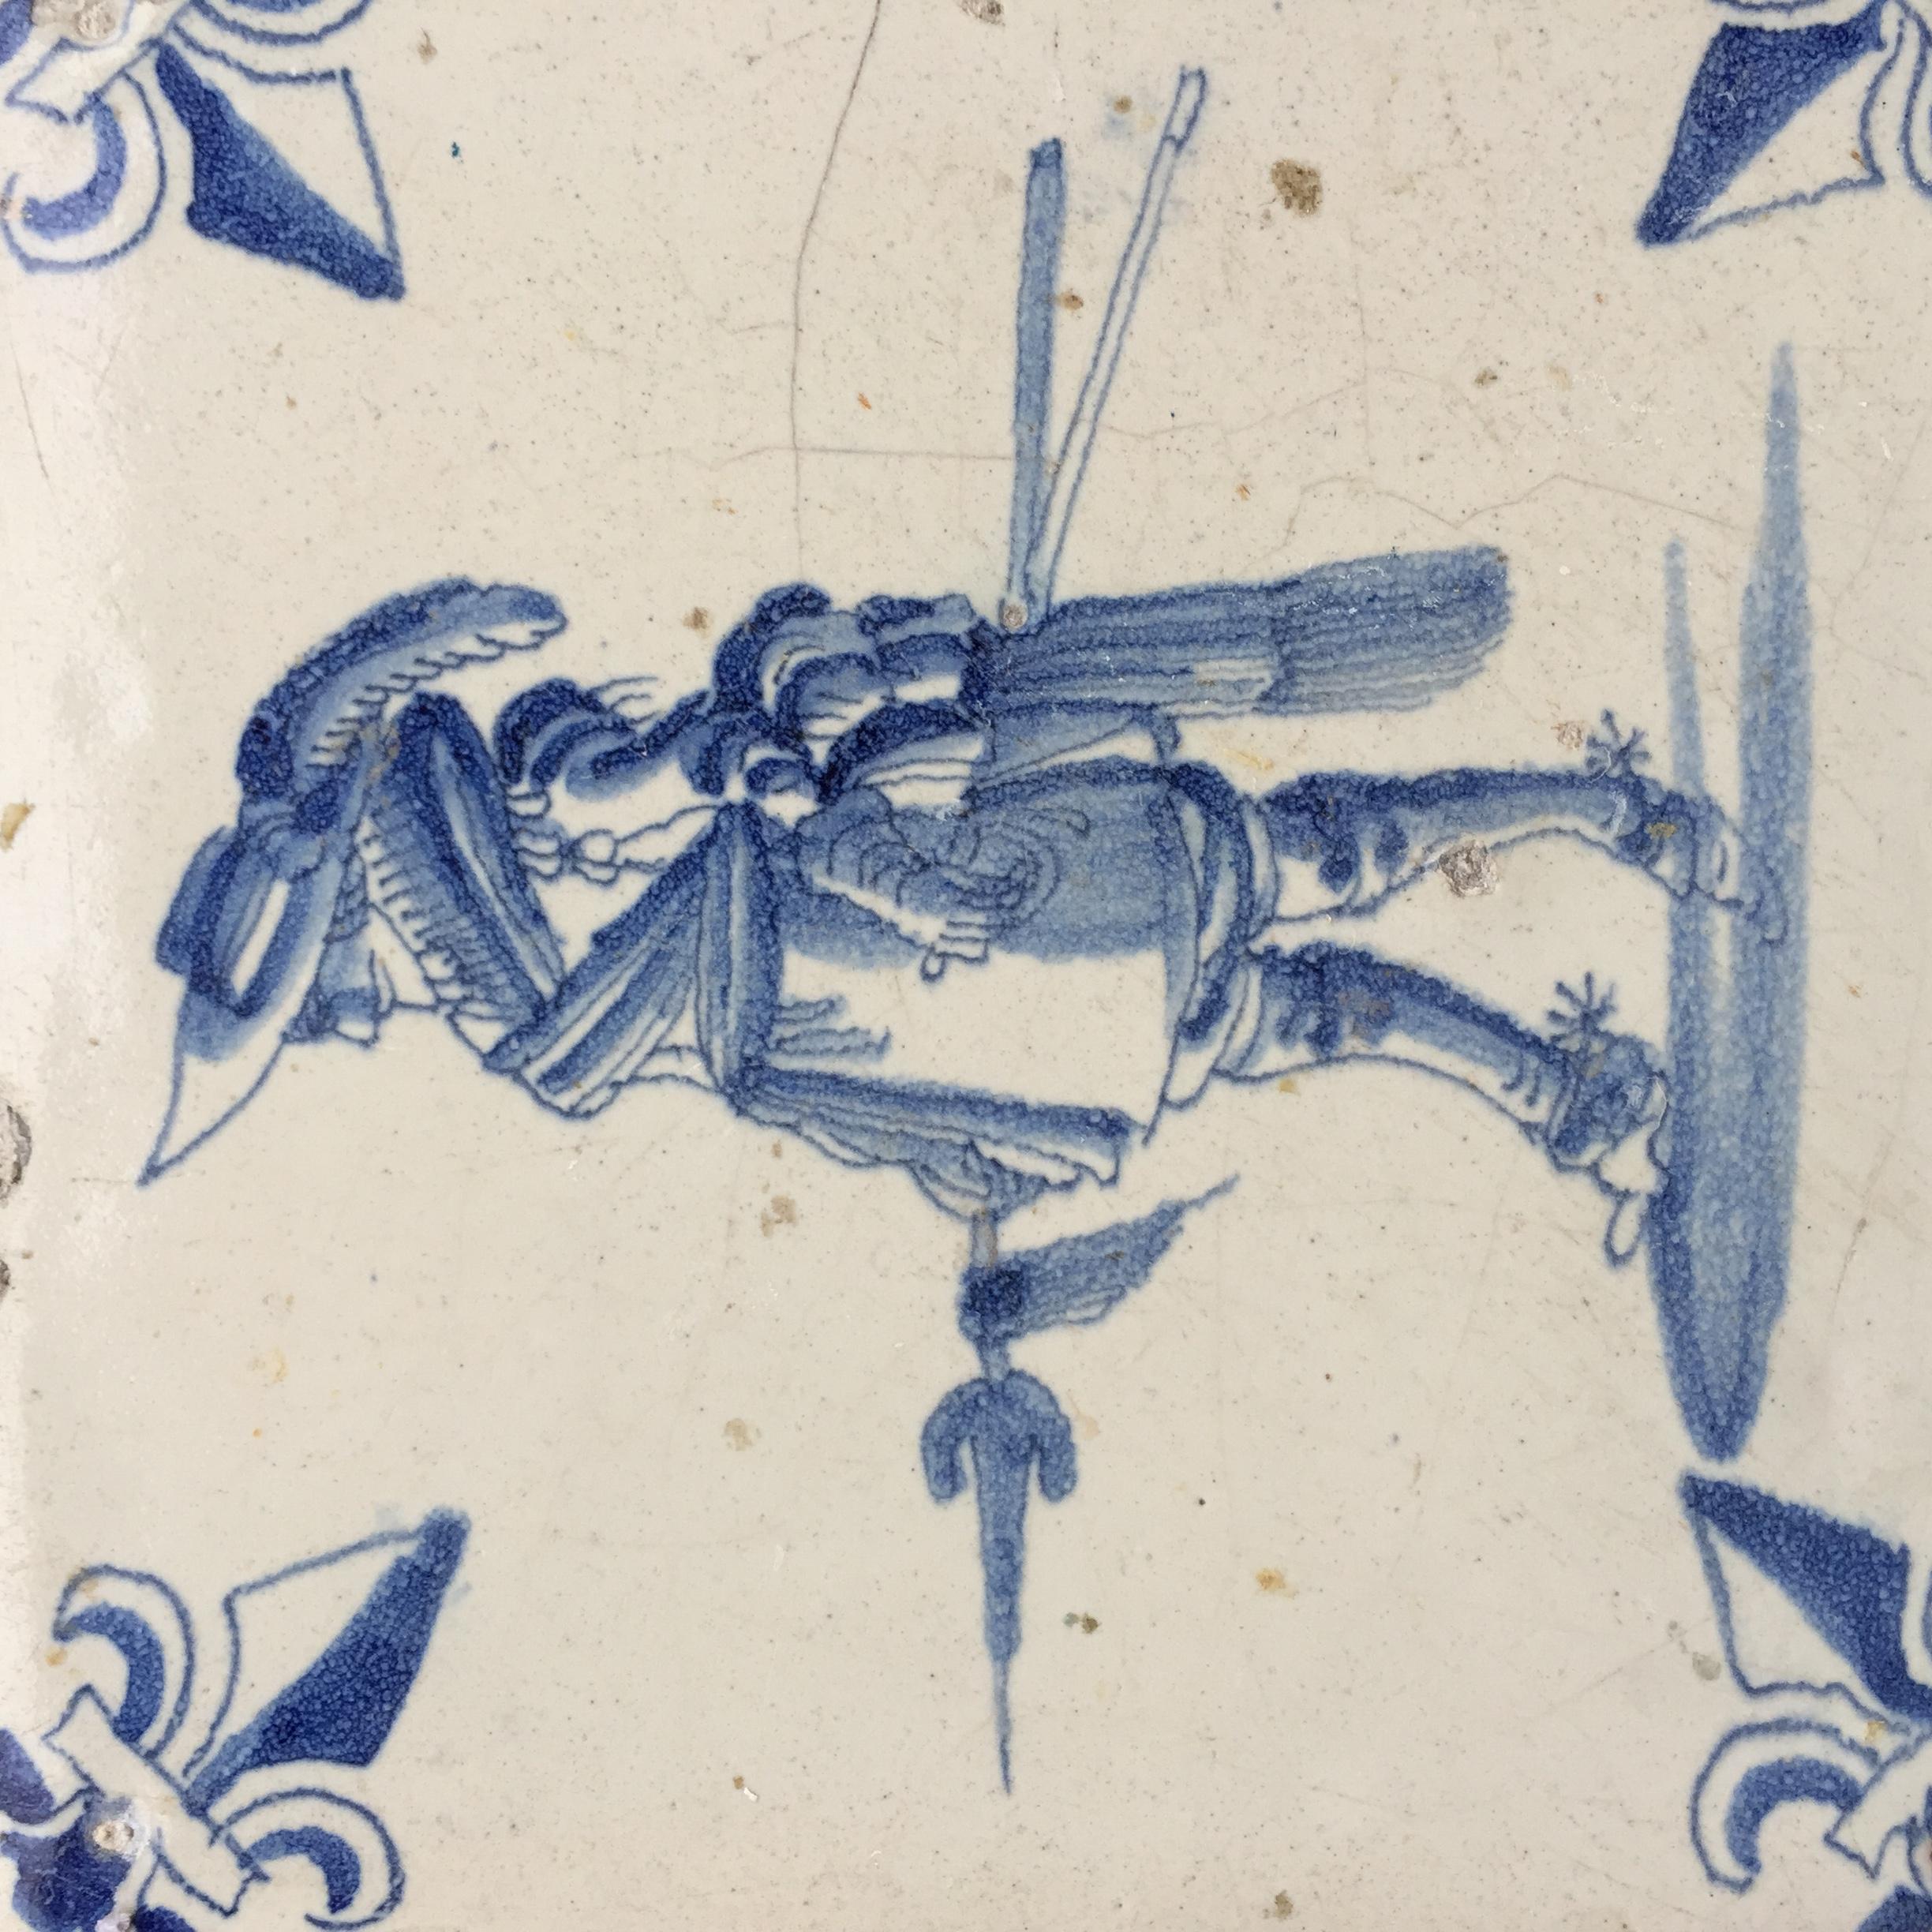 Países Bajos
Ámsterdam
Hacia 1625 - 1650

Azulejo holandés azul y blanco con decoración de un soldado holandés de la época de la Guerra de los 80 Años. Este soldado podría ser un miembro de la guardia civil, y probablemente lleva un traje